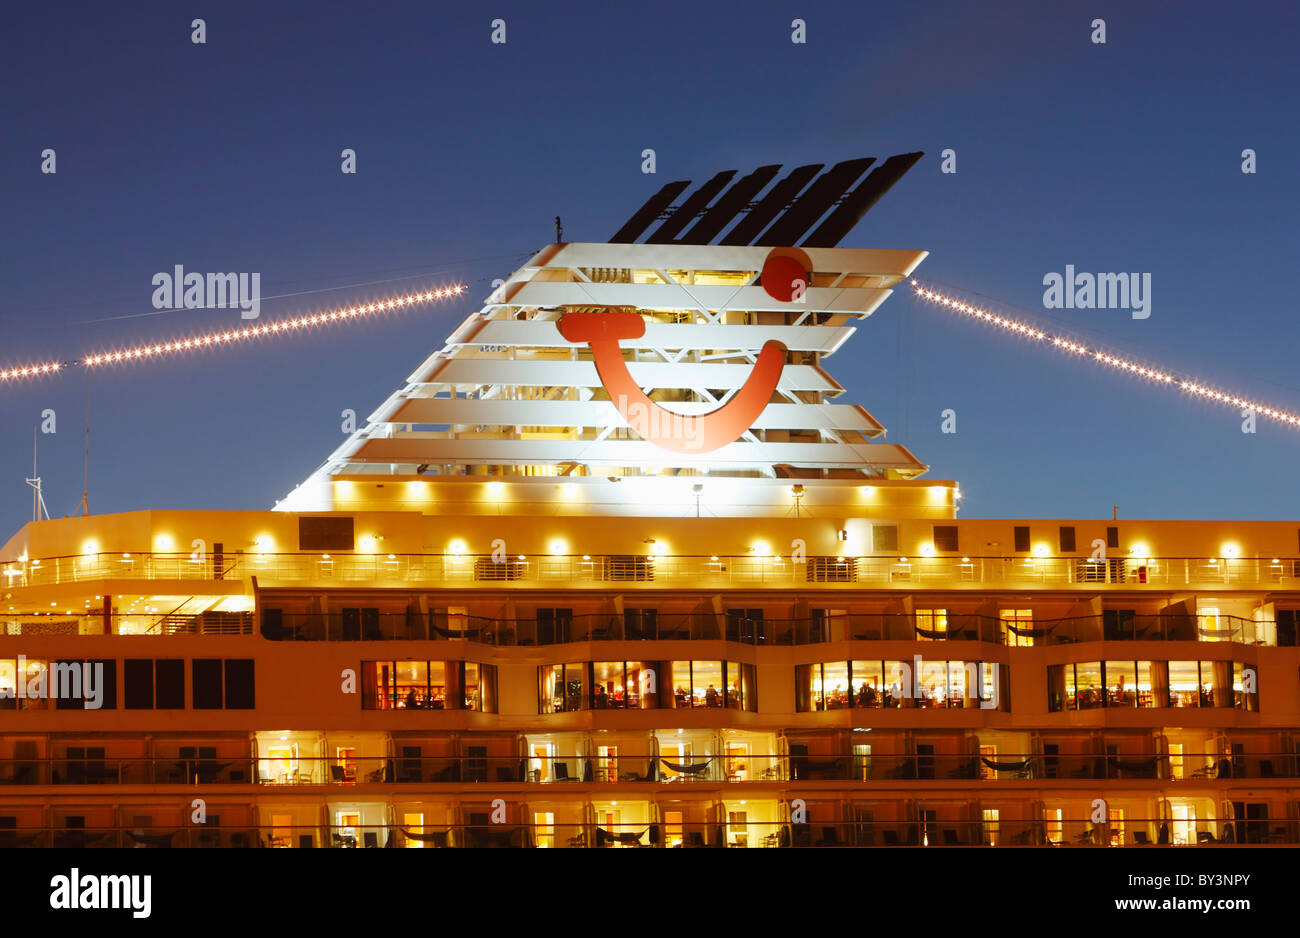 Tui crucero 'Mein Schiff' en Las Palmas de Gran Canaria, Islas Canarias,  España Fotografía de stock - Alamy